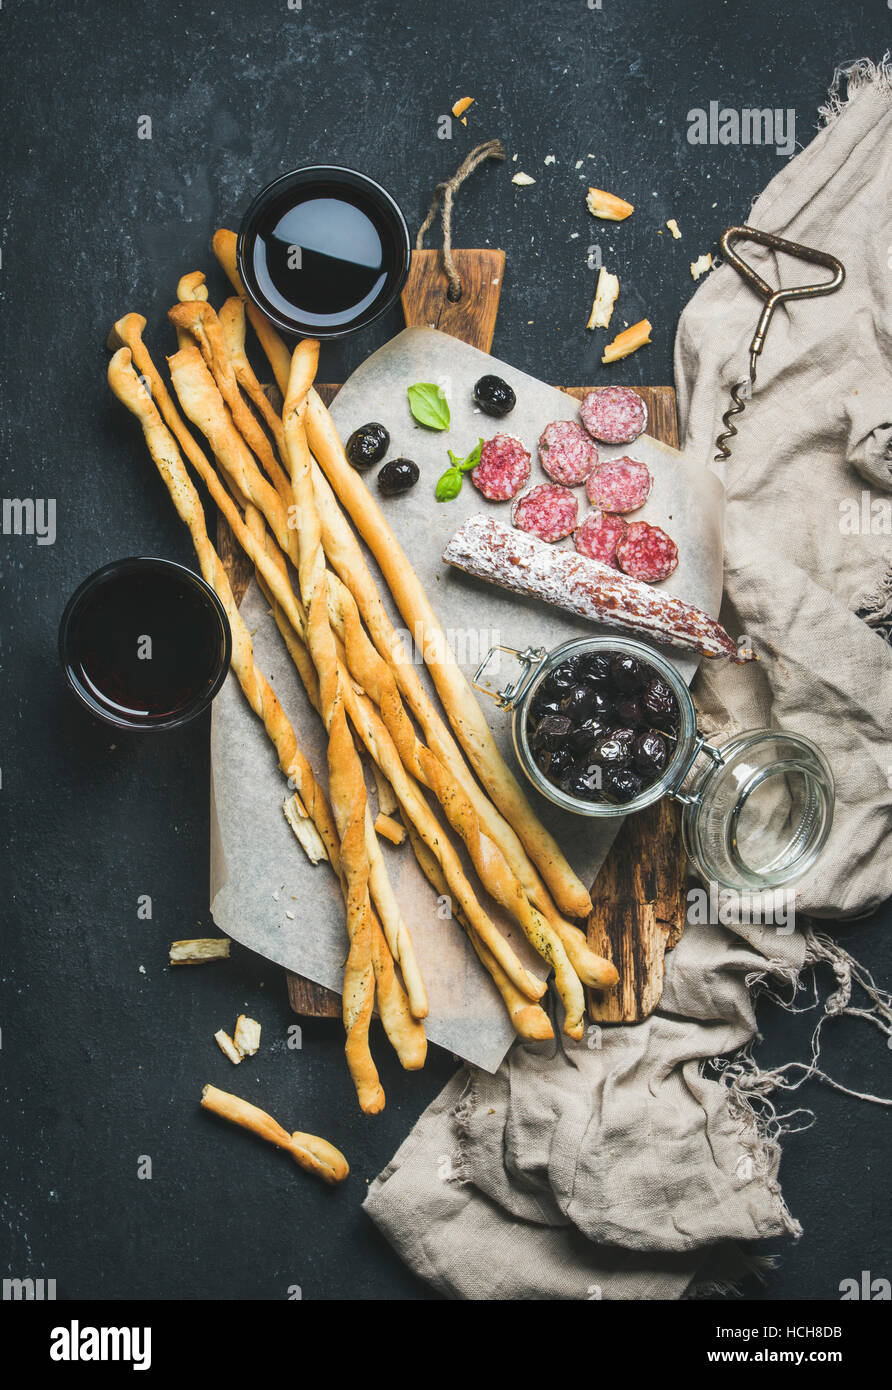 Wein und Häppchen festgelegt. Italienische Grissini Brot-Sticks, trockenen Wurstwaren Fleischwurst, schwarzen Oliven auf rustikalen hölzernen Portion Board und Rotwein im Glas Stockfoto